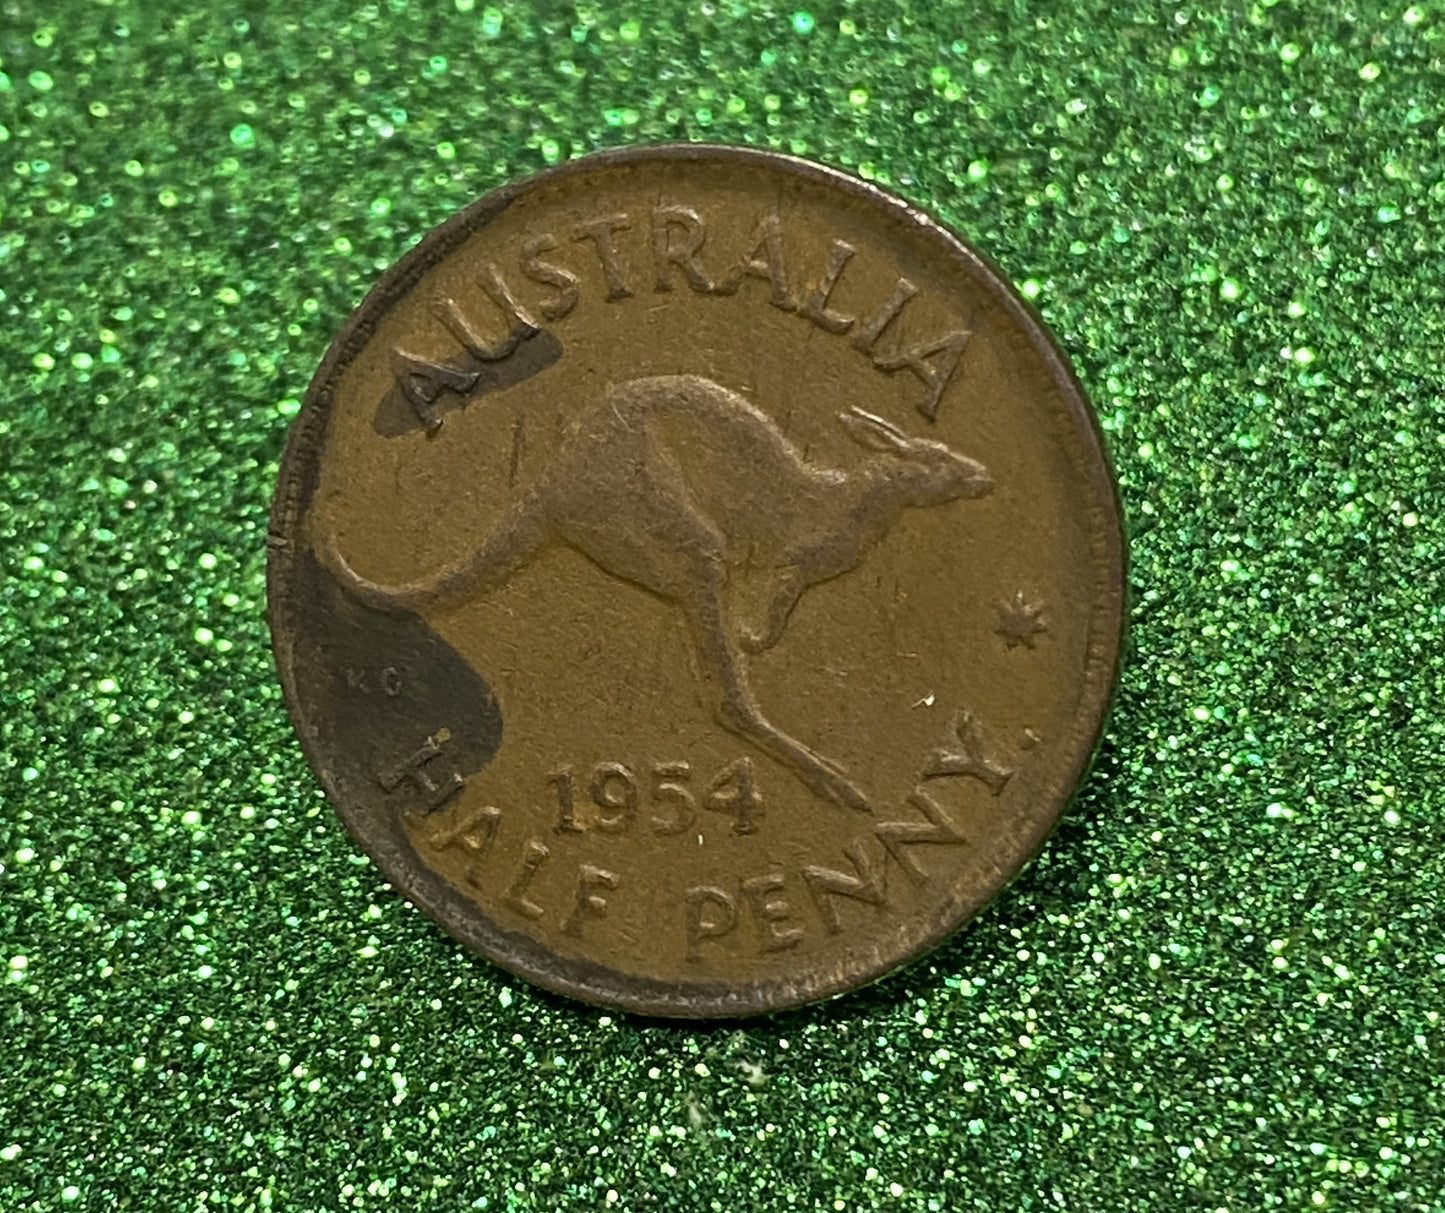 Australian HALF PENNY COIN 1954 Queen Elizabeth VG/F CONDITION